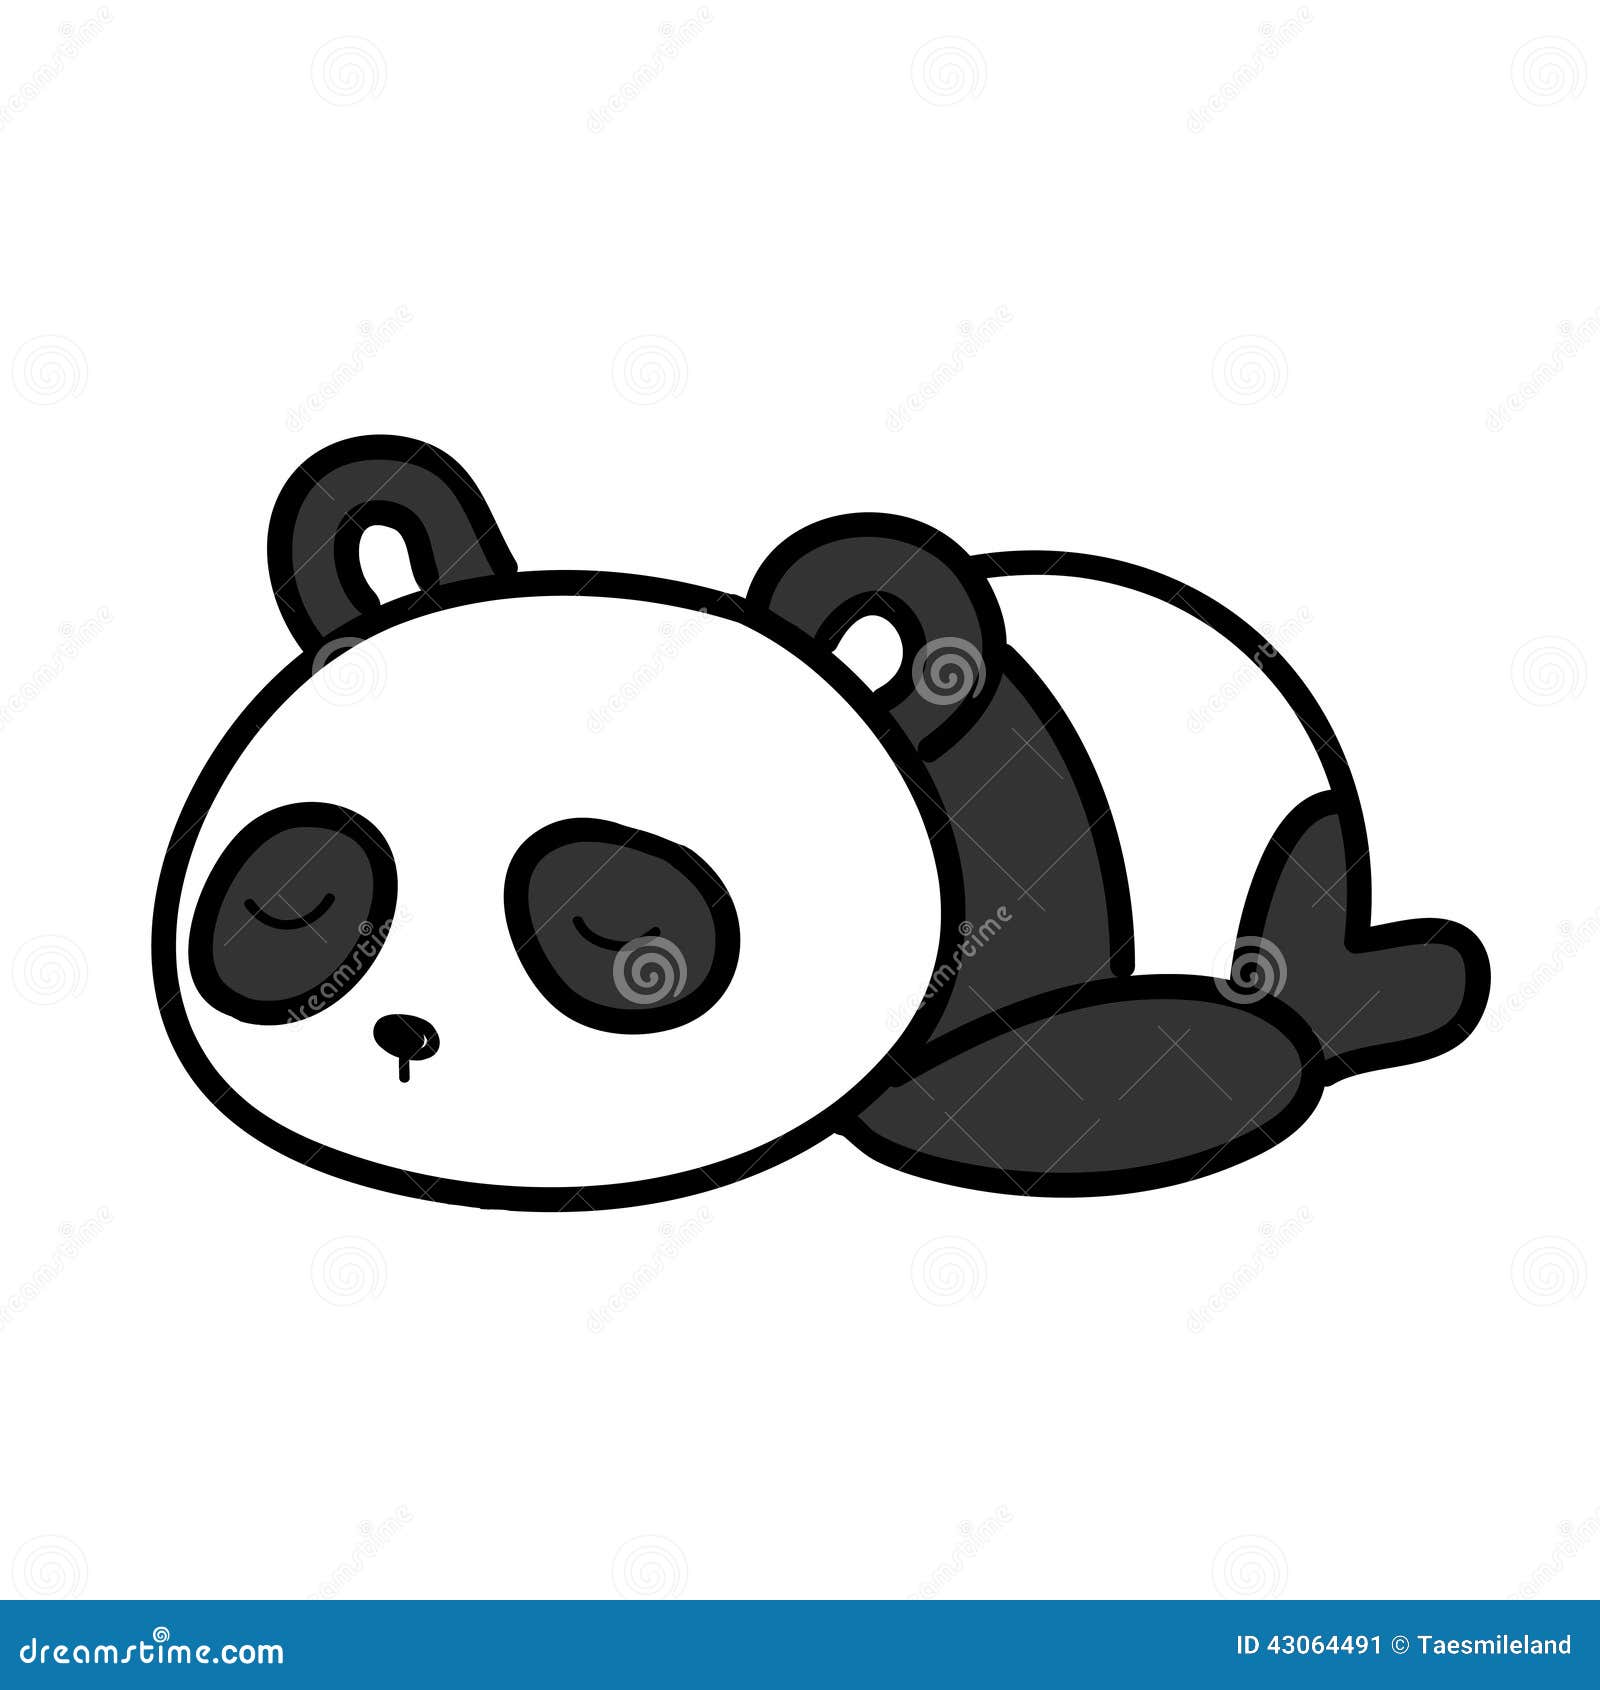 Panda Sleeping Ilustraciones Stock, Vectores, Y Clipart – (1,005  Ilustraciones Stock)